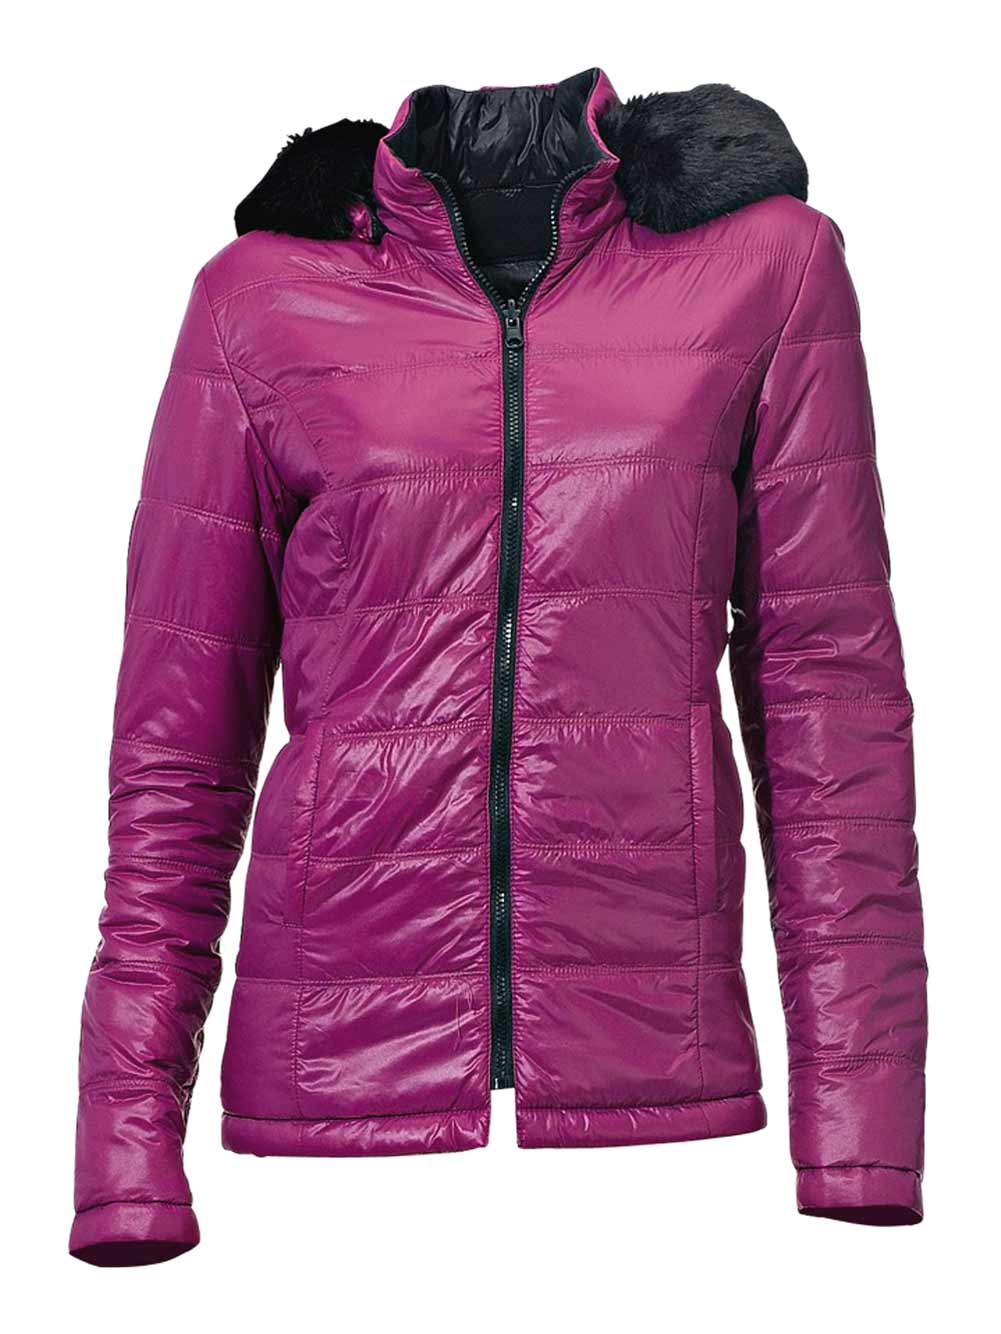 jacken auf rechnung bestellen als neukunde Rick Cardona Designer Damen-Wende-Steppjacke Jacke Gesteppt pink-schwarz 070.412 MISSFORTY